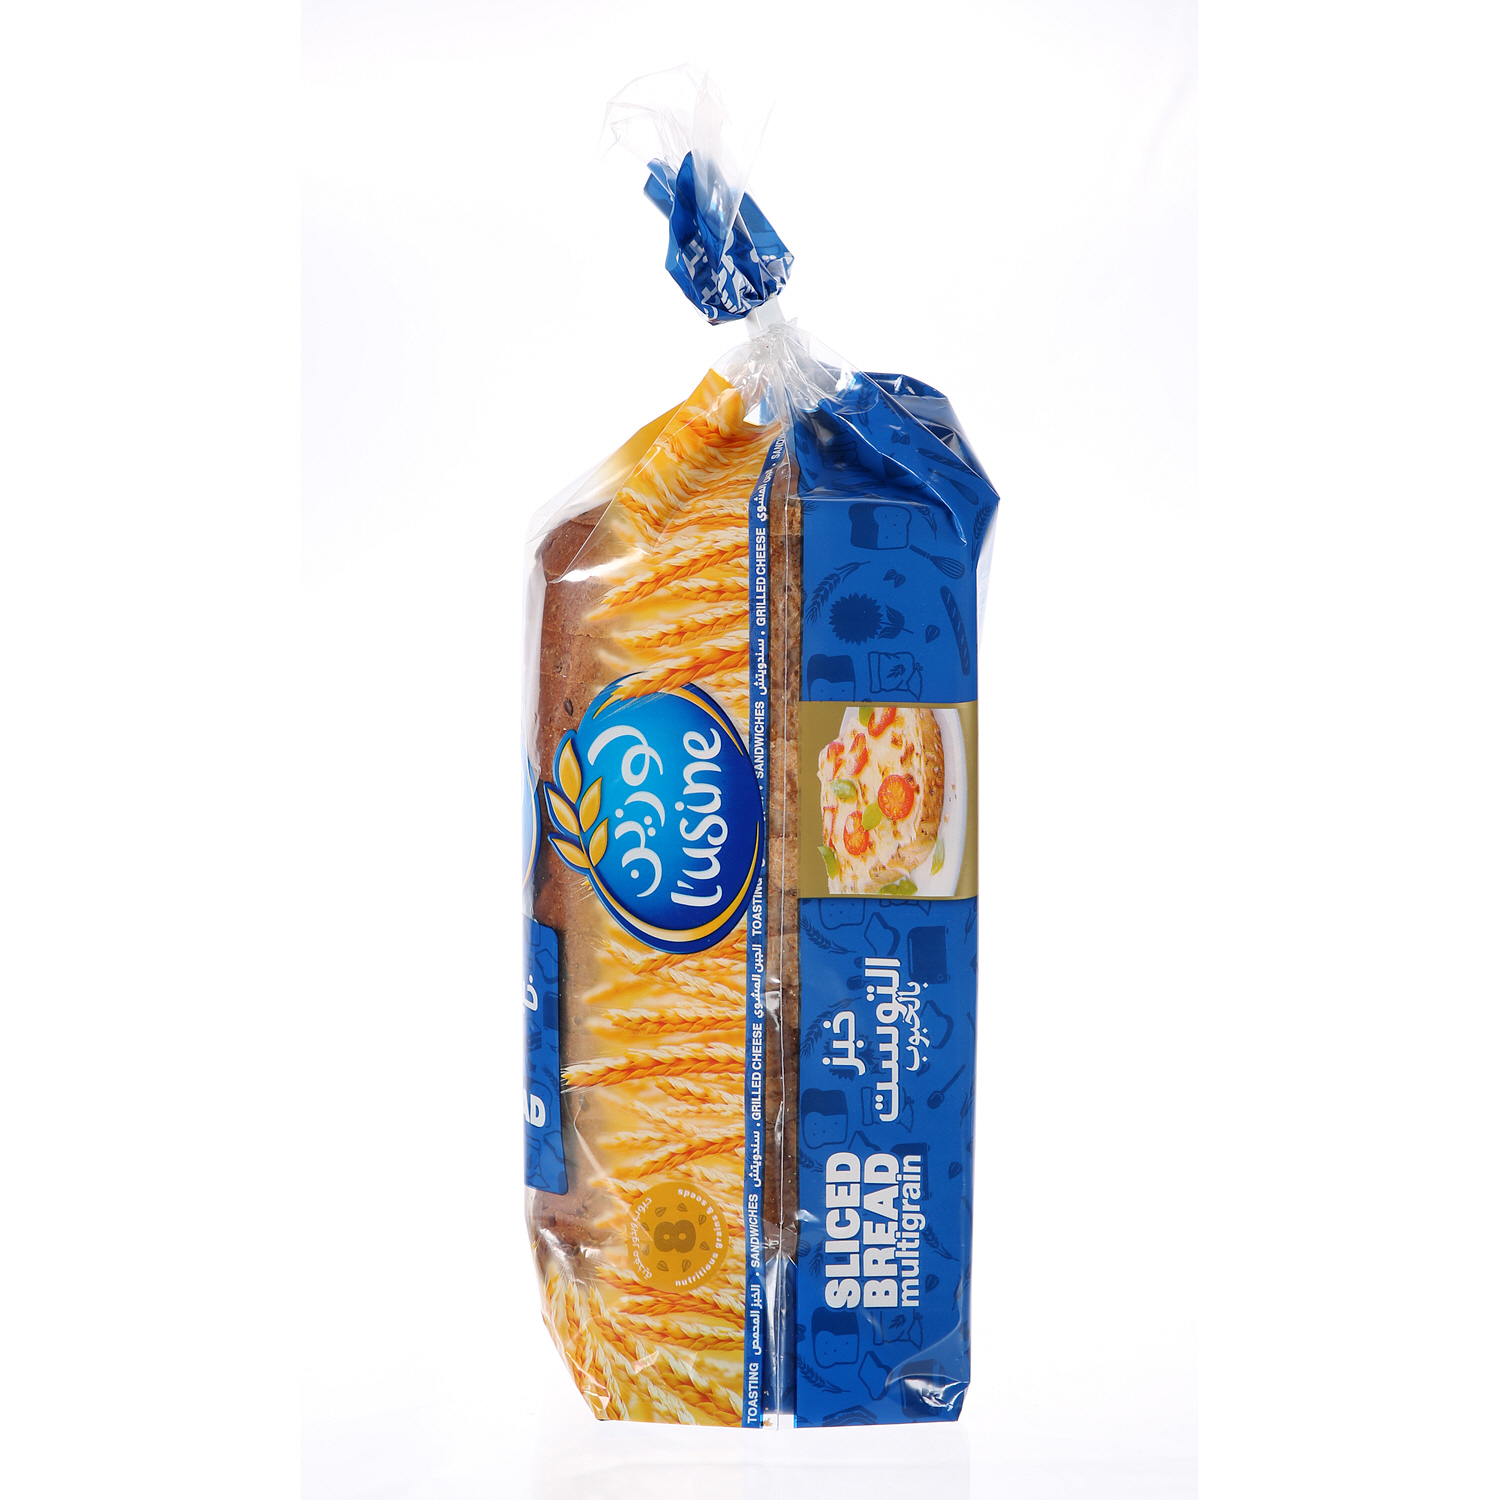 L'usine Slicesd Bread Multigain 600 g